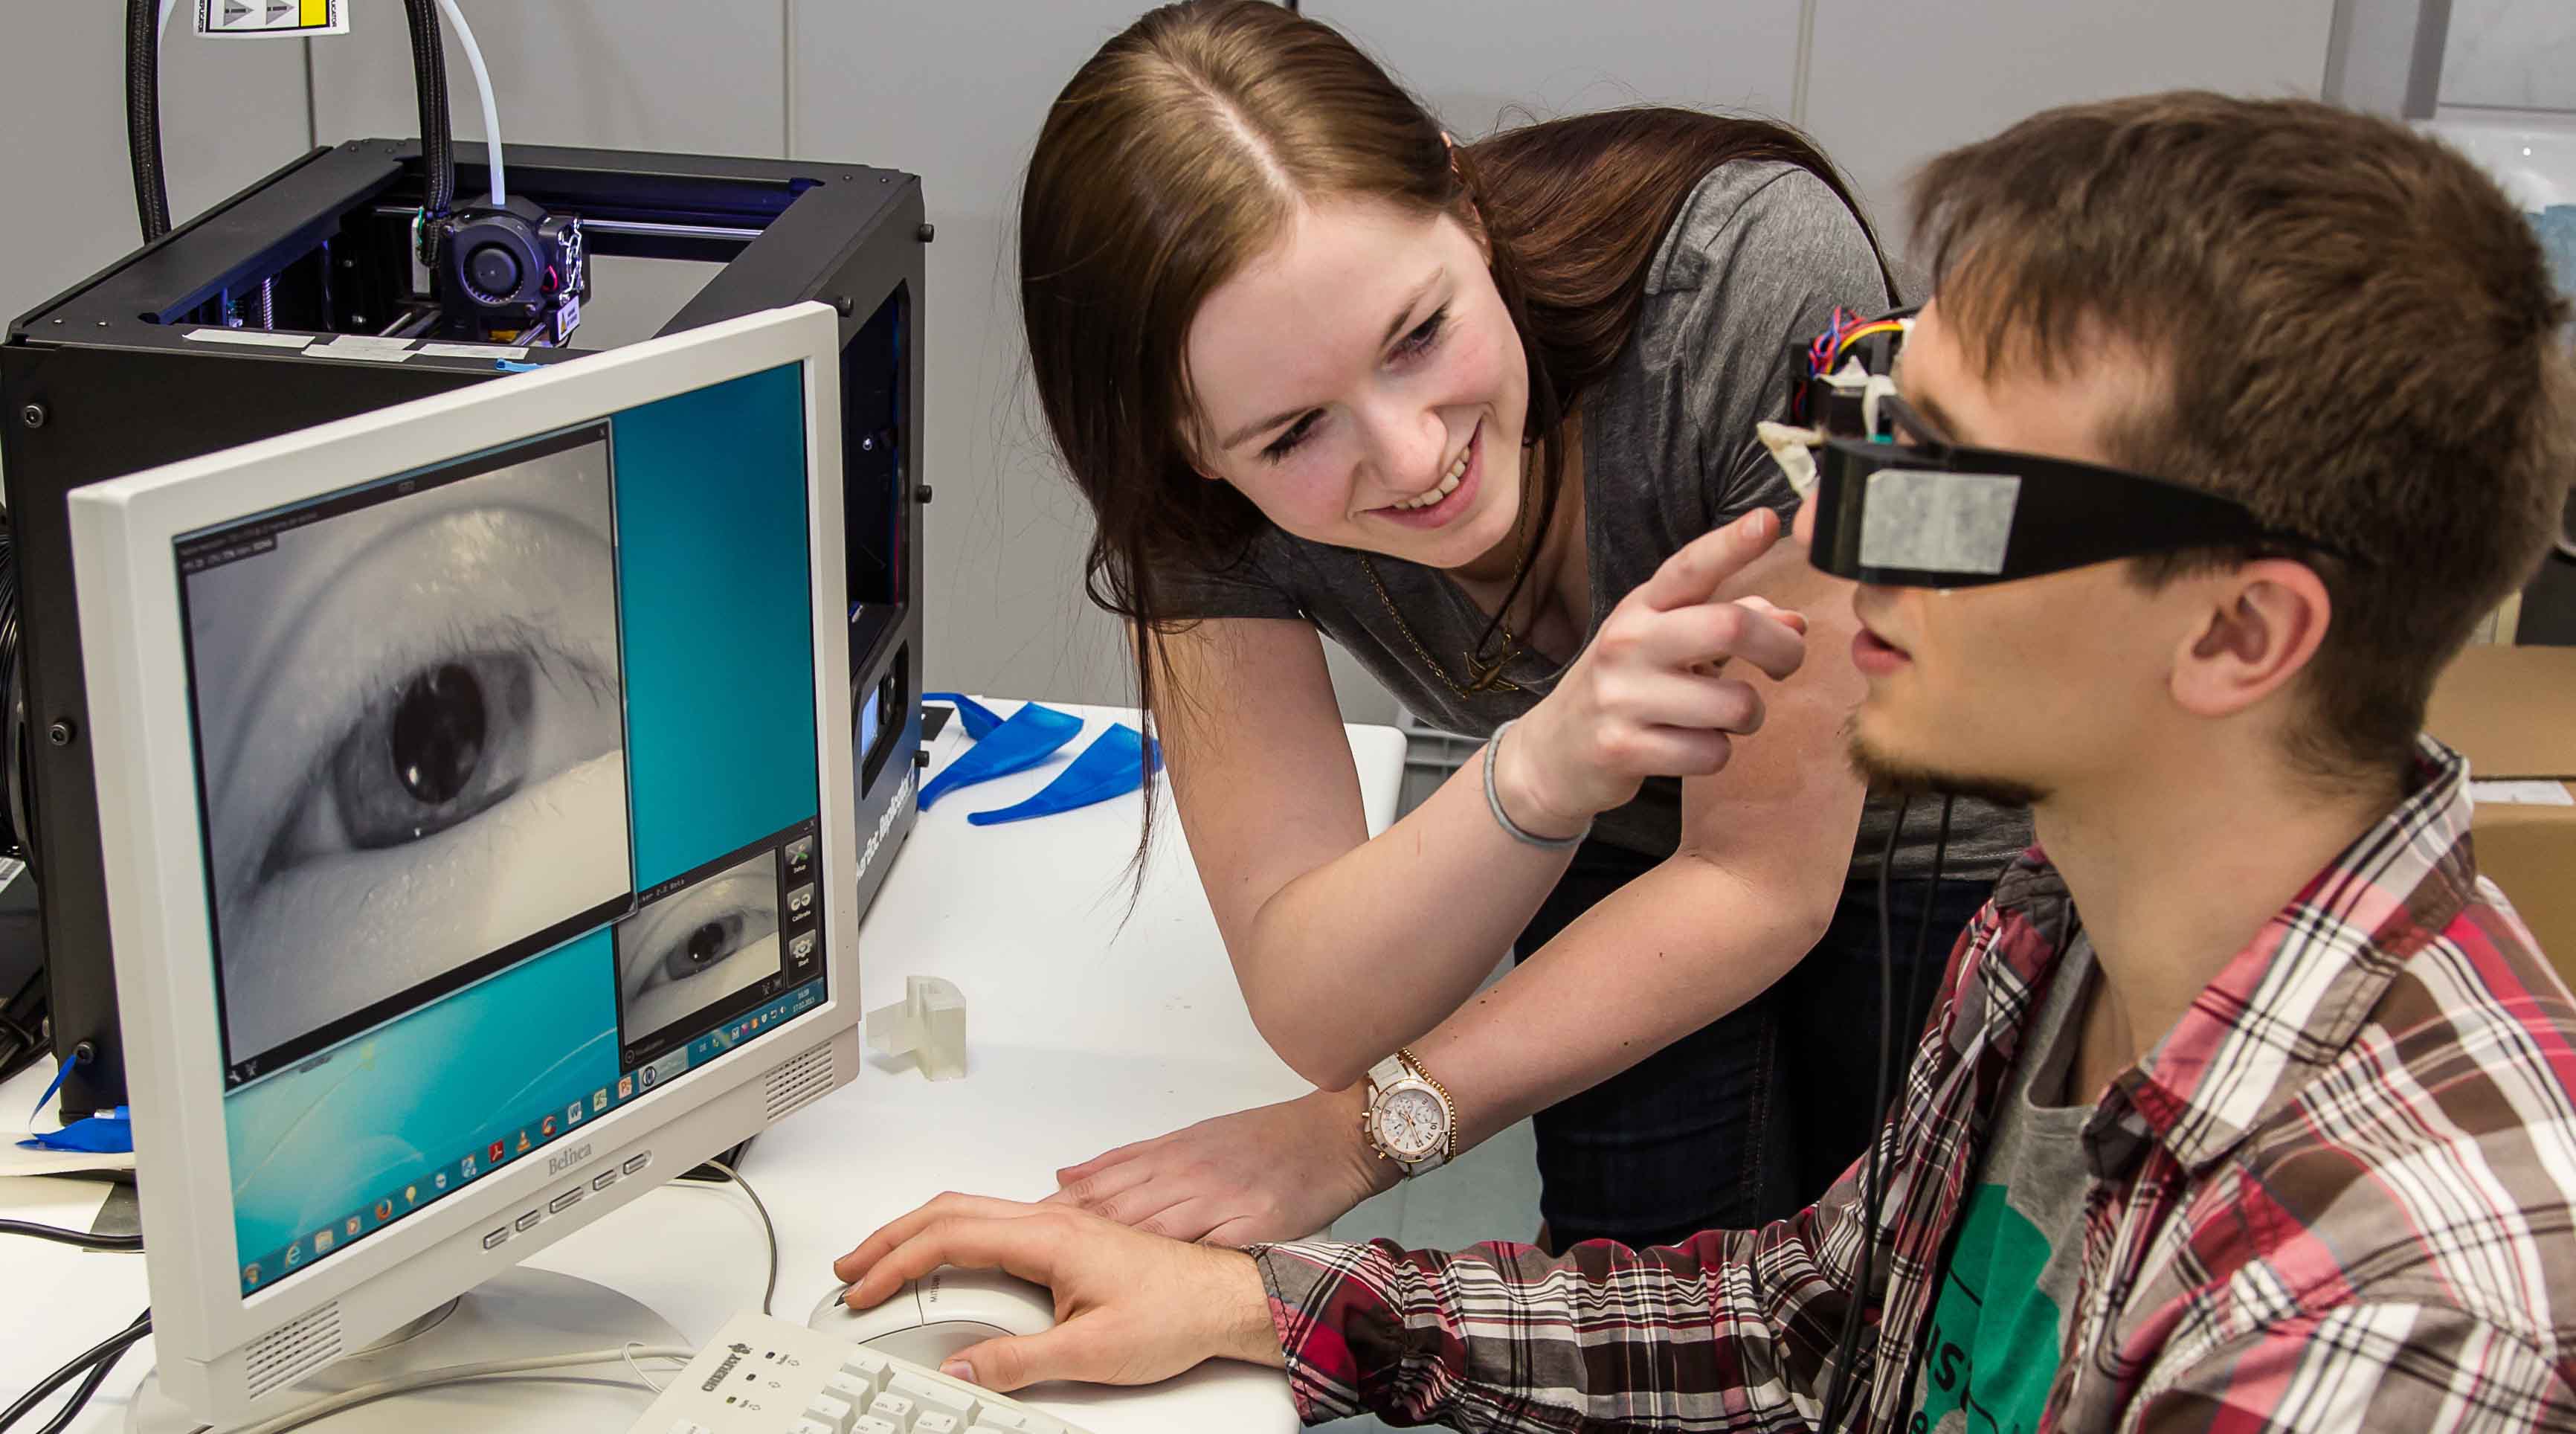 Foto: Ein Student trägt eine Brille mit Kamera. Auf einem Bildschirm vor ihm ist sein Auge zu erkennen. Eine Studierende steht daneben und assistiert.